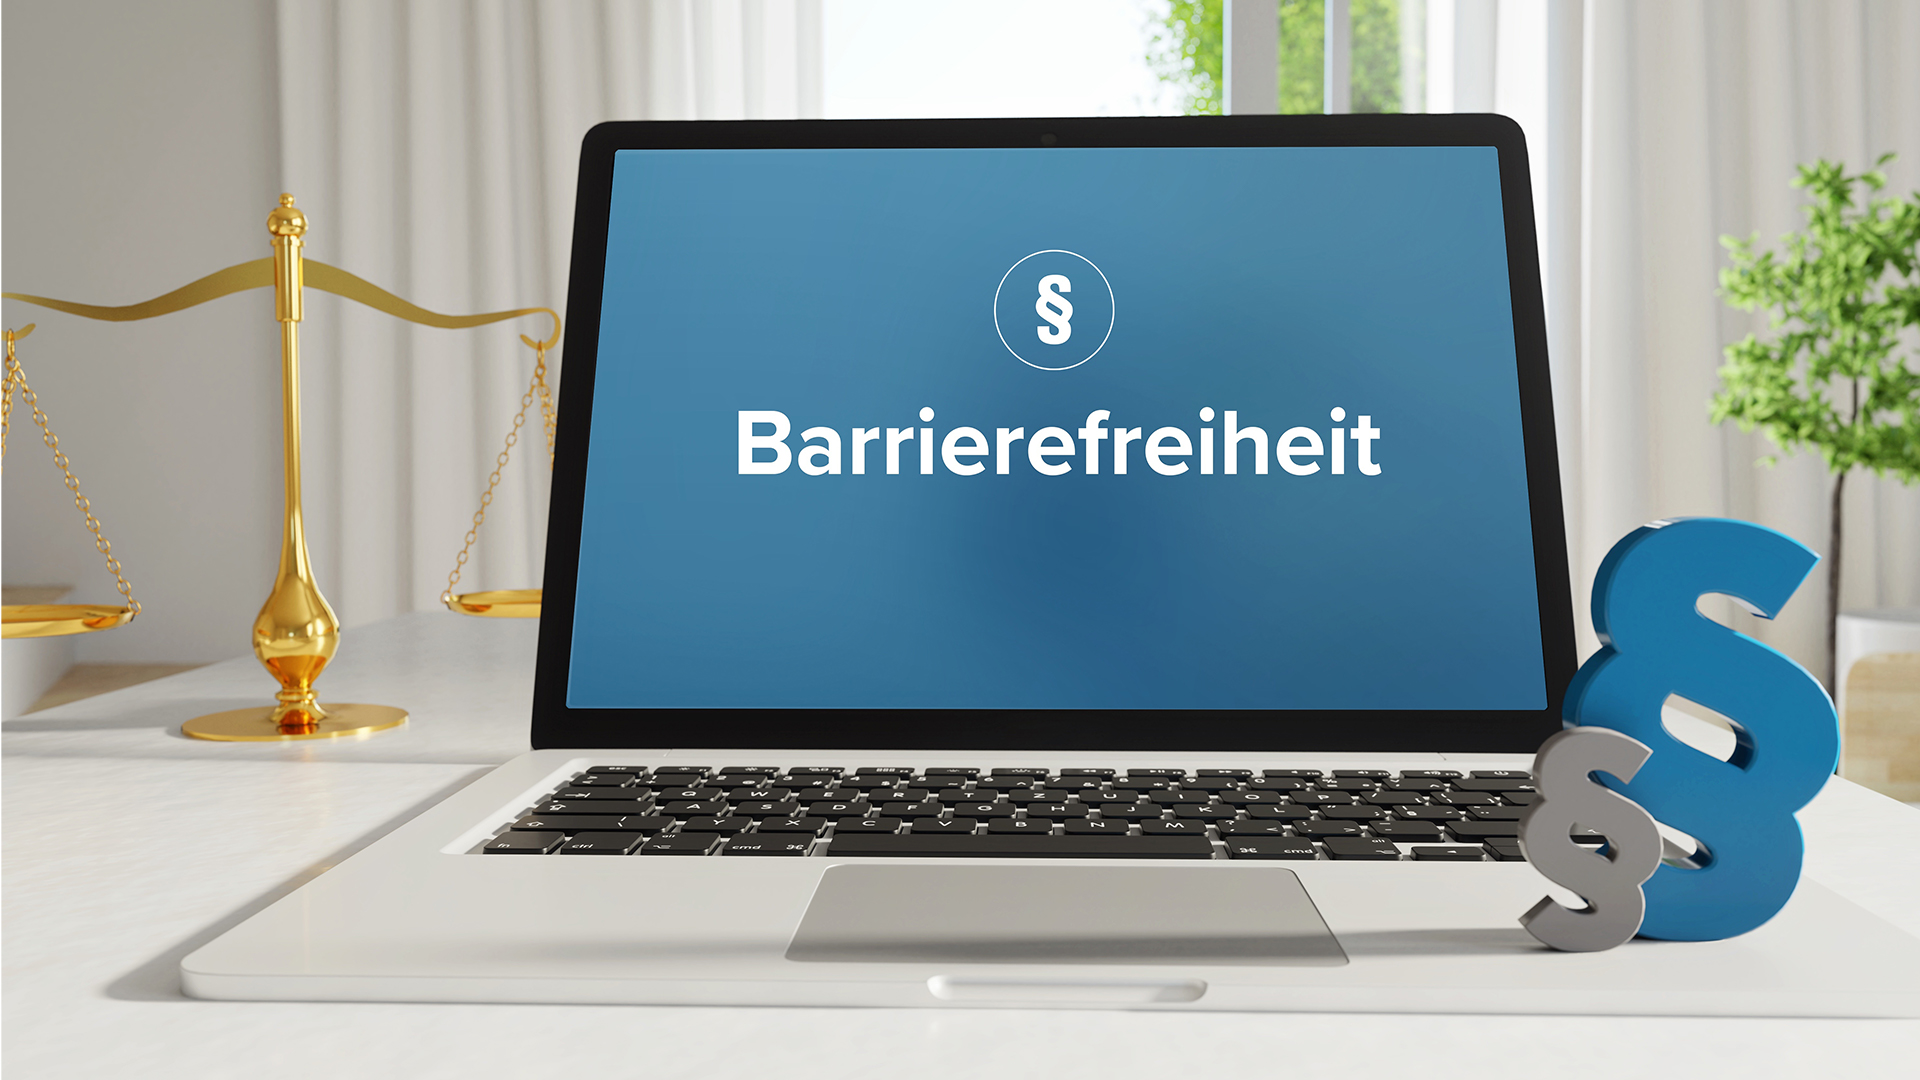 Aufgeklappter Laptop mit dem Wort "Barrierefreiheit" auf dem Bidschirm.